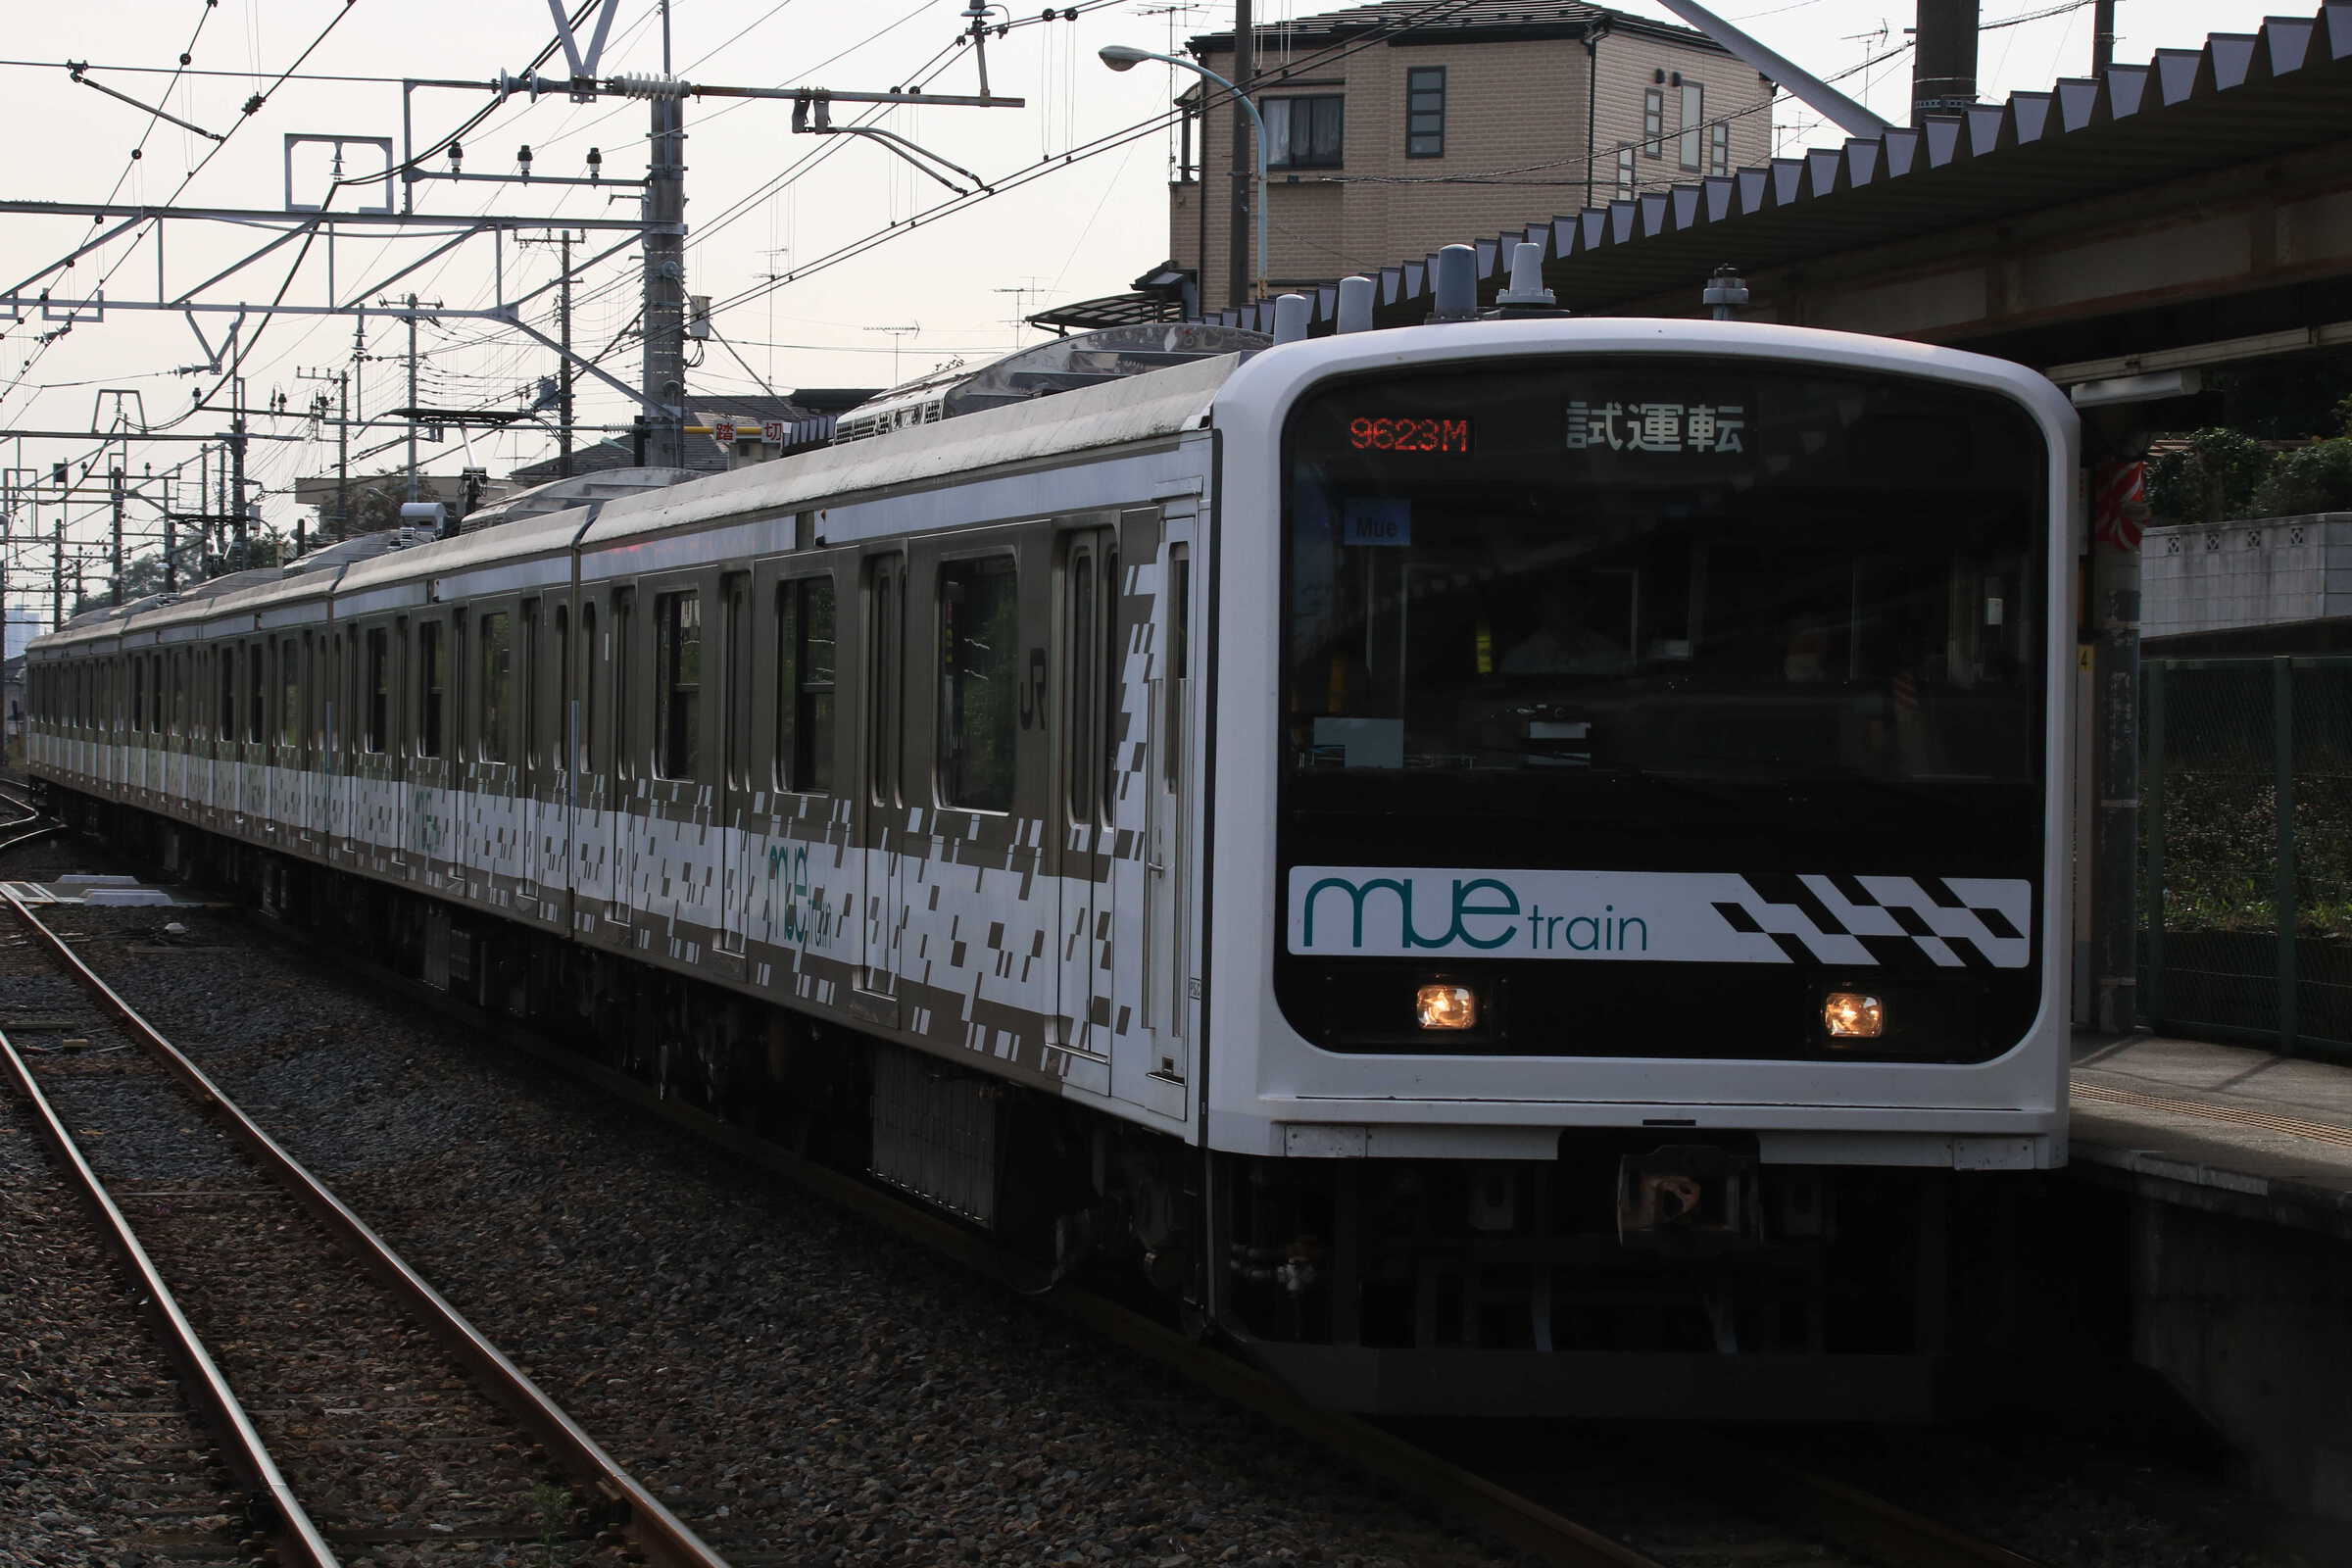 試9623M 209系 “Mue Train” 宇都宮線試運転